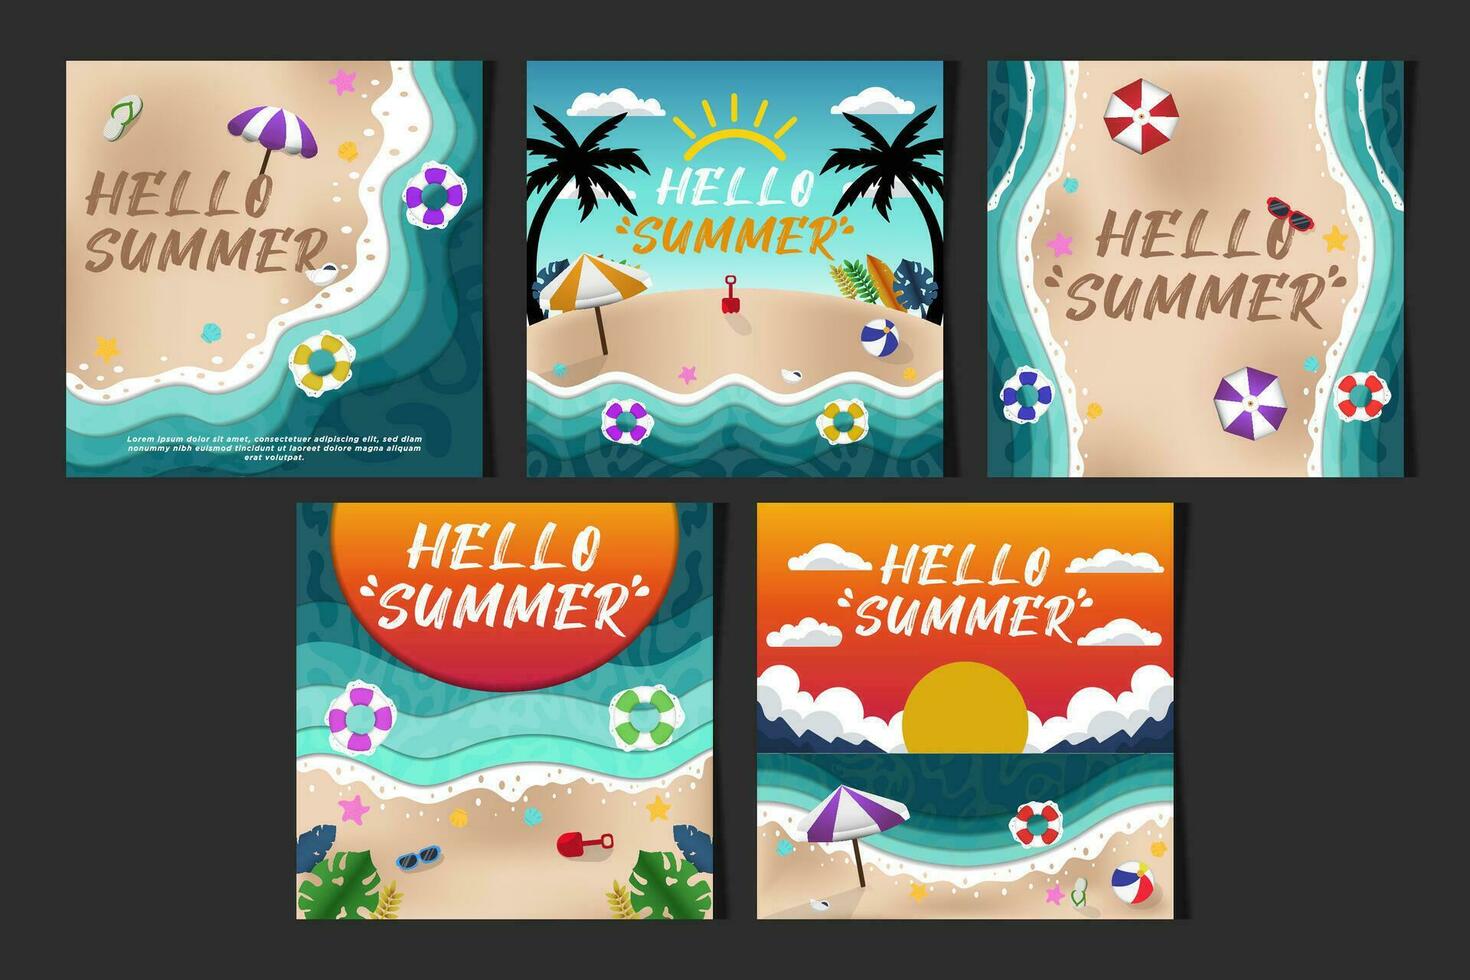 nuevo concepto social medios de comunicación alimenta vector papel cortar Hola verano playa ilustración